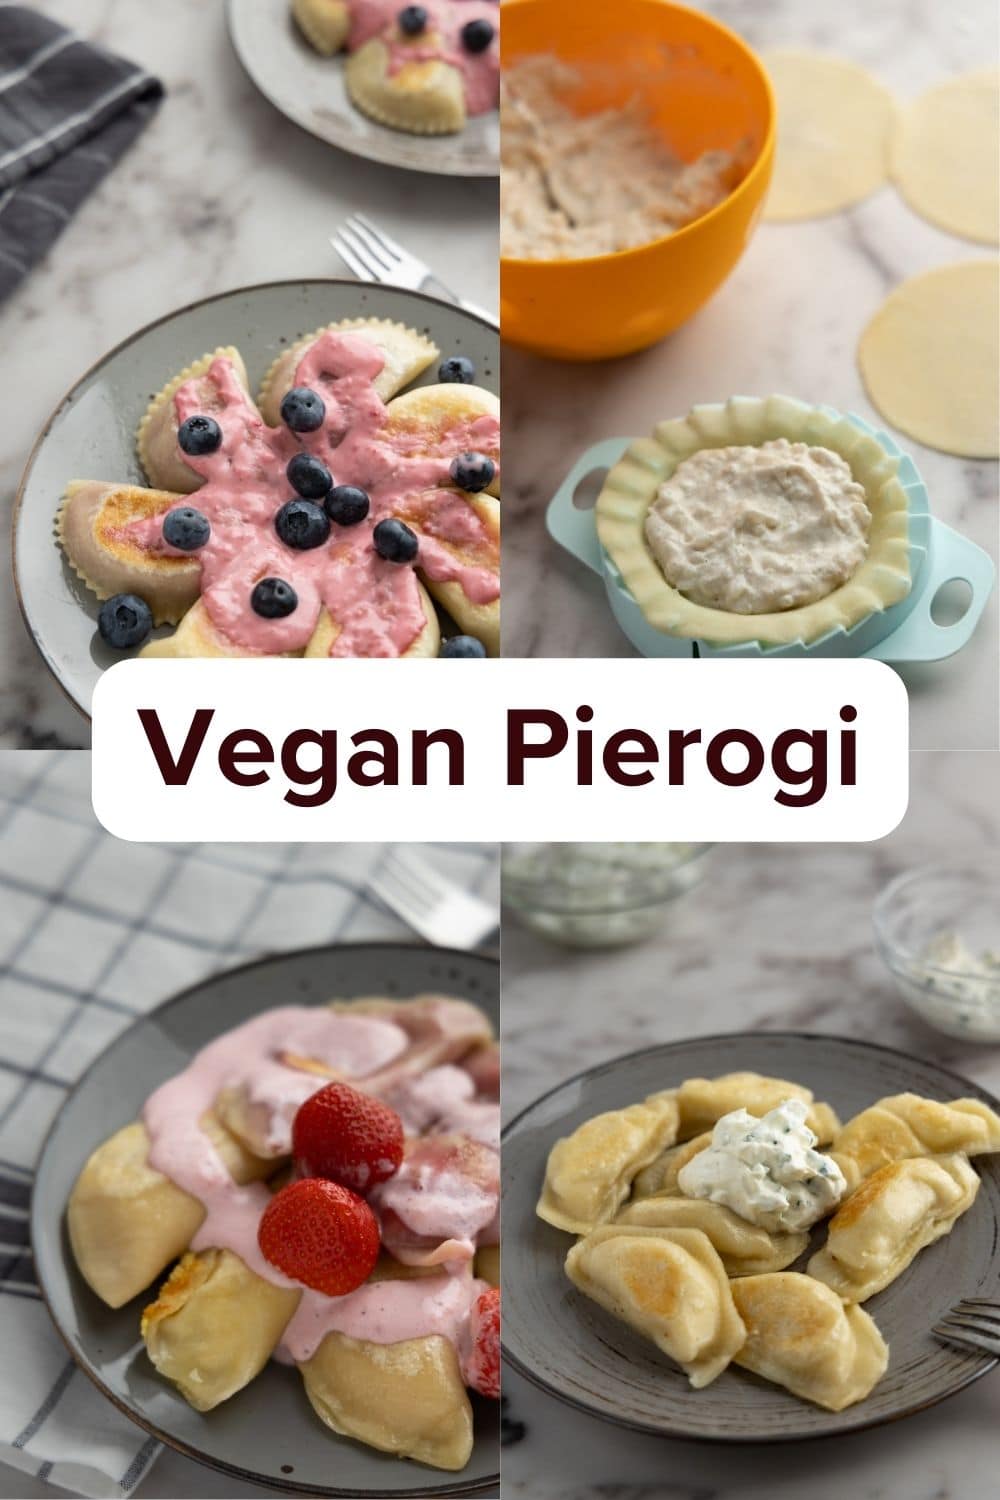 Vegan Pierogi: 8 Fillings You Must Try